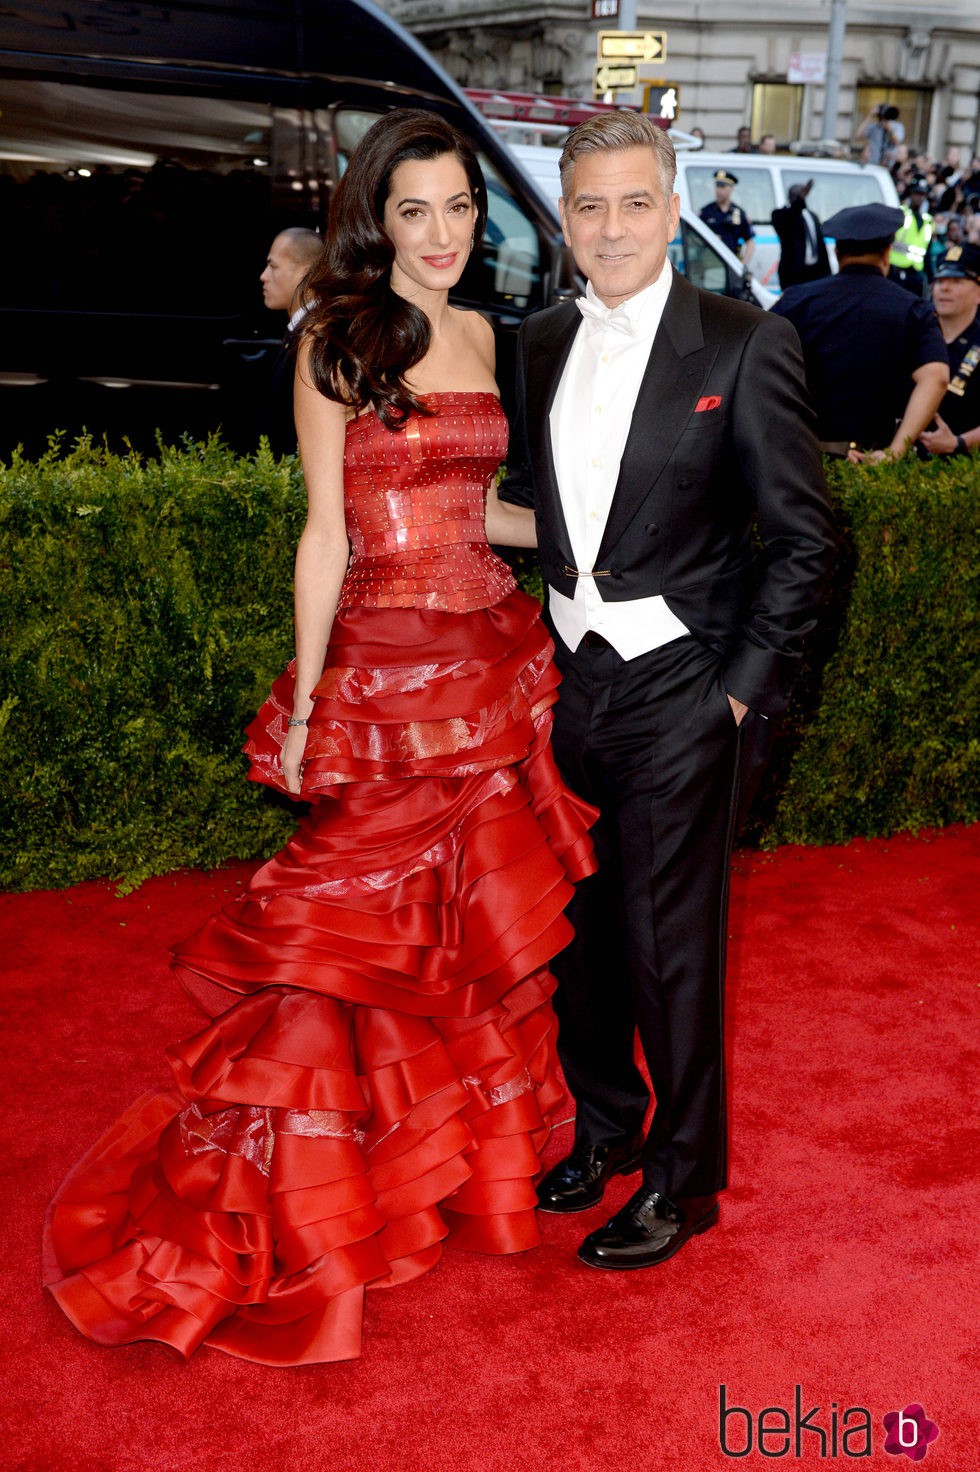 George Clooney y su mujer Amal Alamuddin en la gala MET 2015